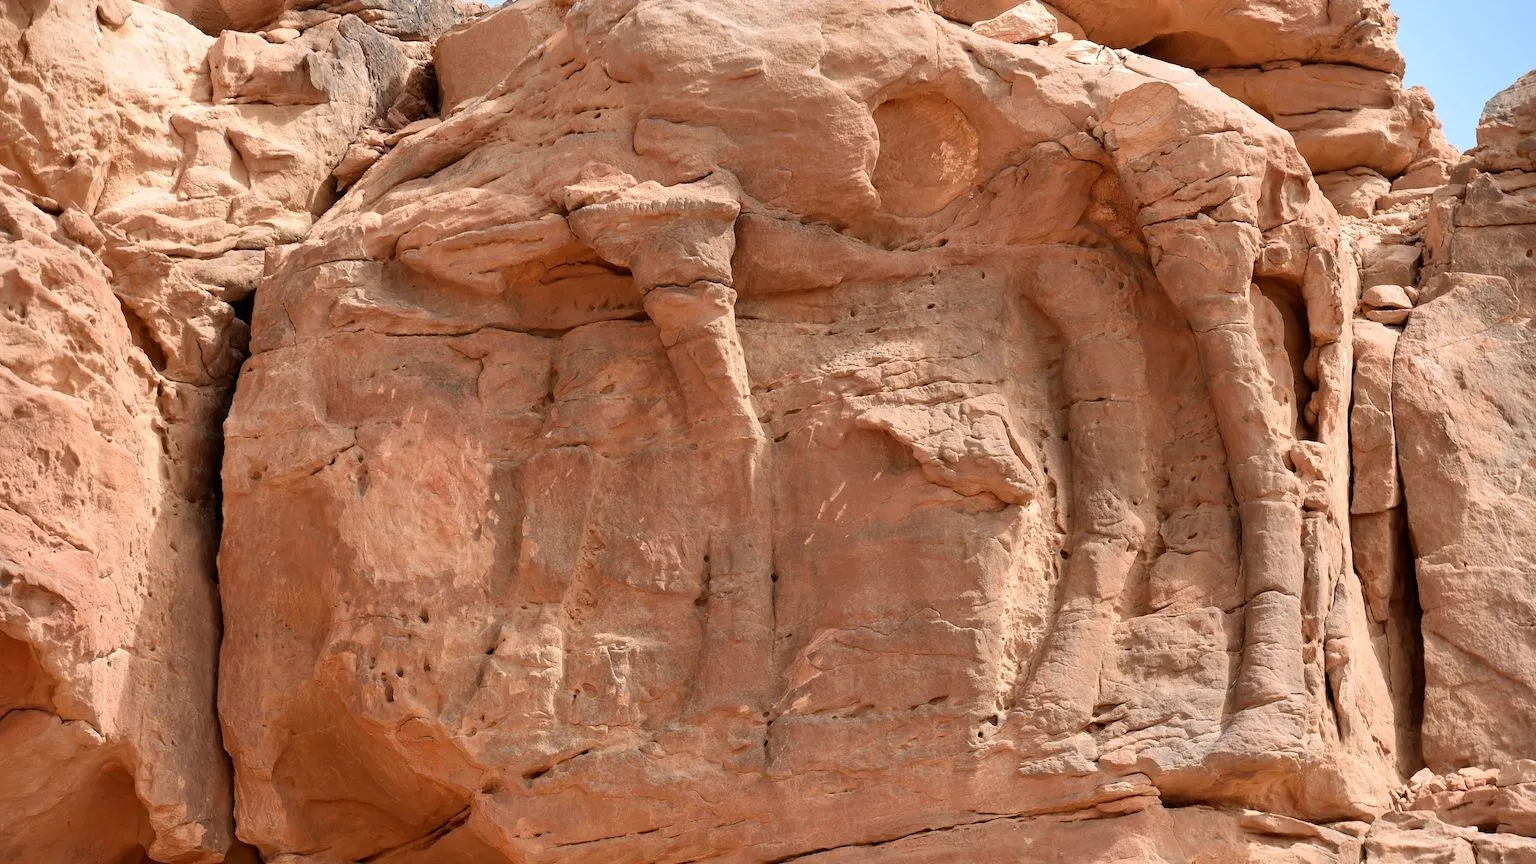 Séria sôch tiav nájdených v saudskoarabskej provincii Al-Jawf bola pôvodne považovaná za starú približne 2000 rokov.  Pomocou rôznych meracích nástrojov tím archeológov určil, že sochy sú v skutočnosti staré 7 000 až 8 000 rokov.